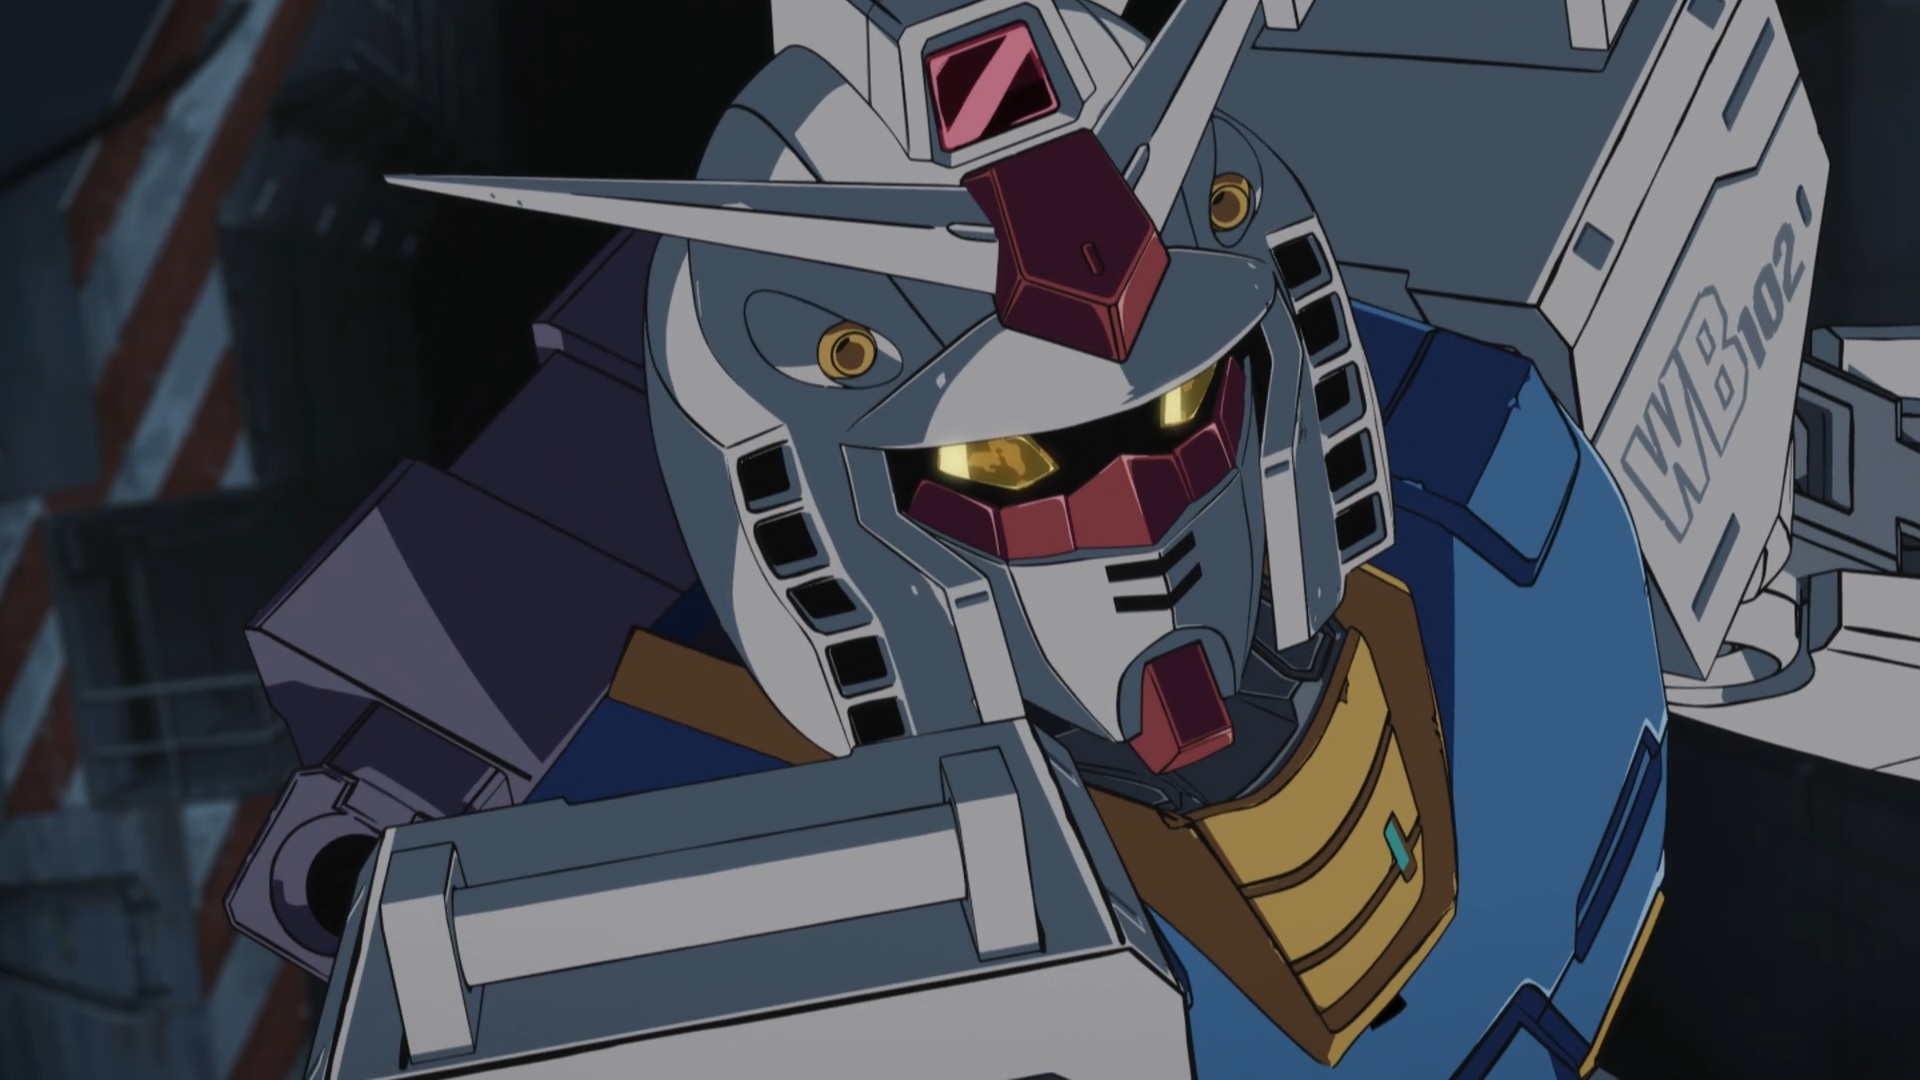 Anime Mechs Anime Screenshot Mobile Suit Gundam Gundam Super Robot Taisen RX 78 Gundam Artwork Digit 1920x1080